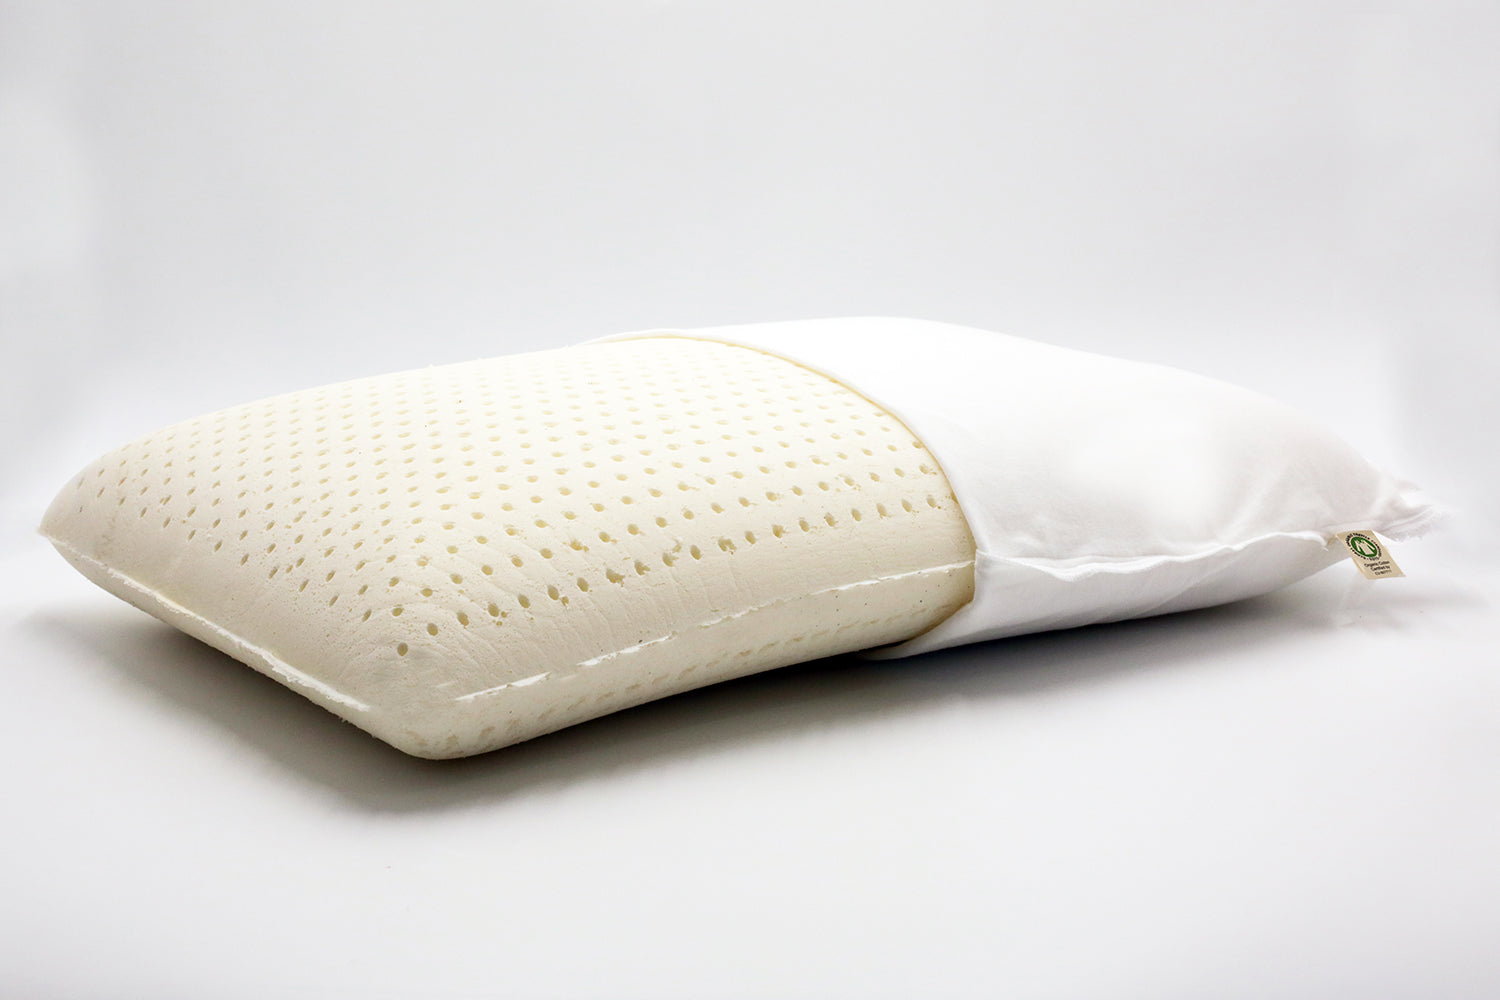 Royalisneeo 100% Talalay Natural Latex Pillow, Medium Support Bed Pillow  Helps